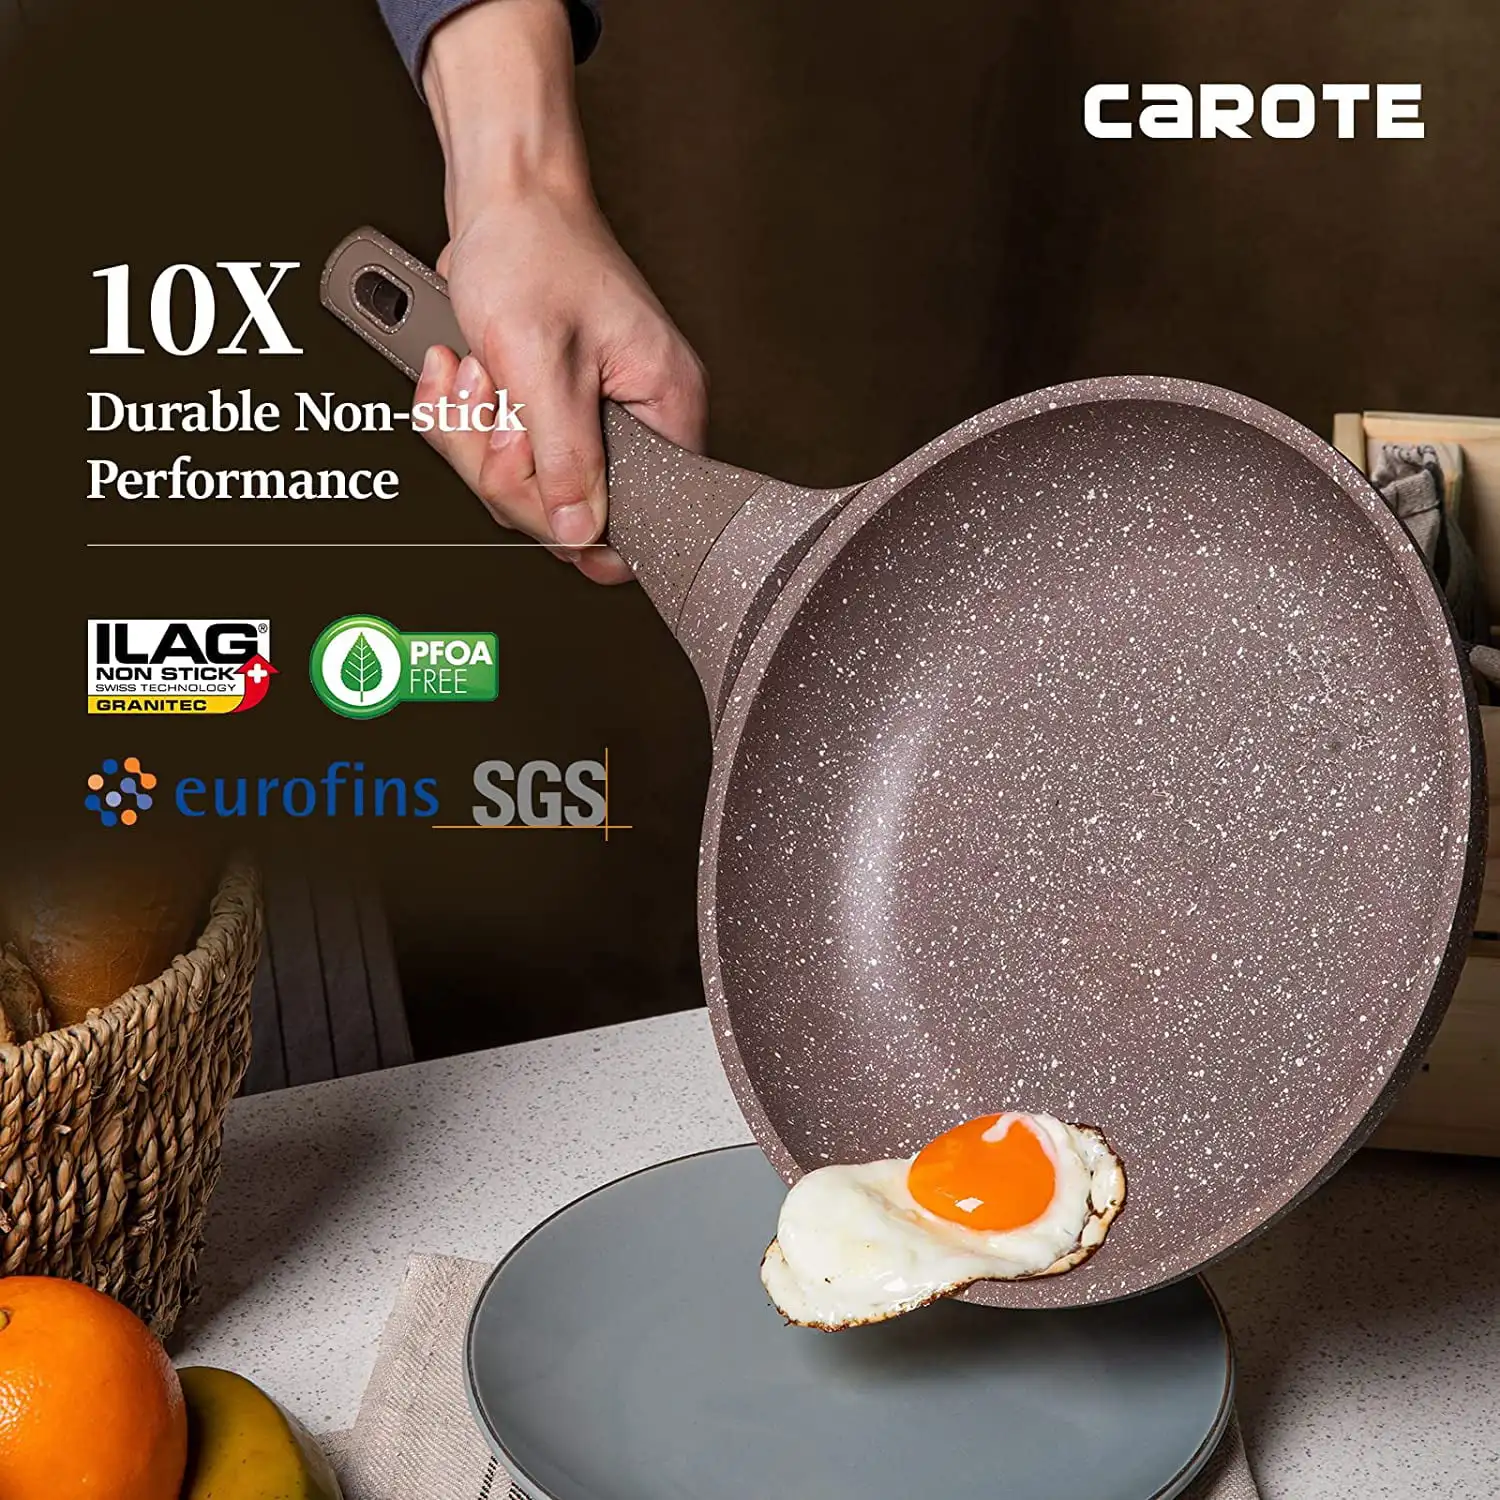 Carote Nonstick Cookware Sets, 9 Pcs Granite Non Stick Pots and